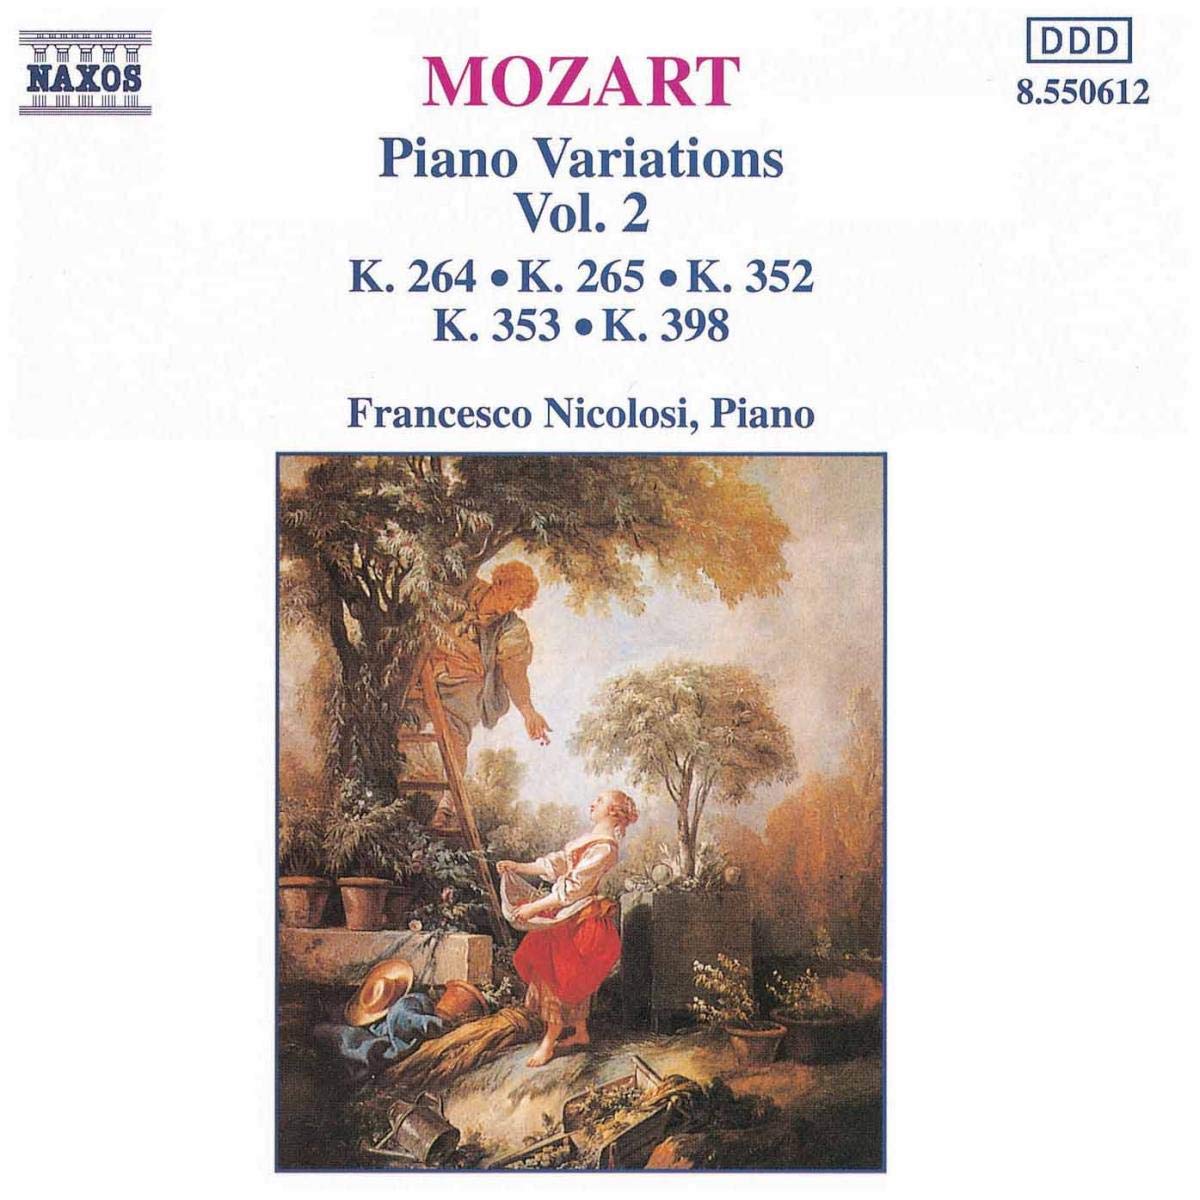 MOZART: Piano Variations vol. 2